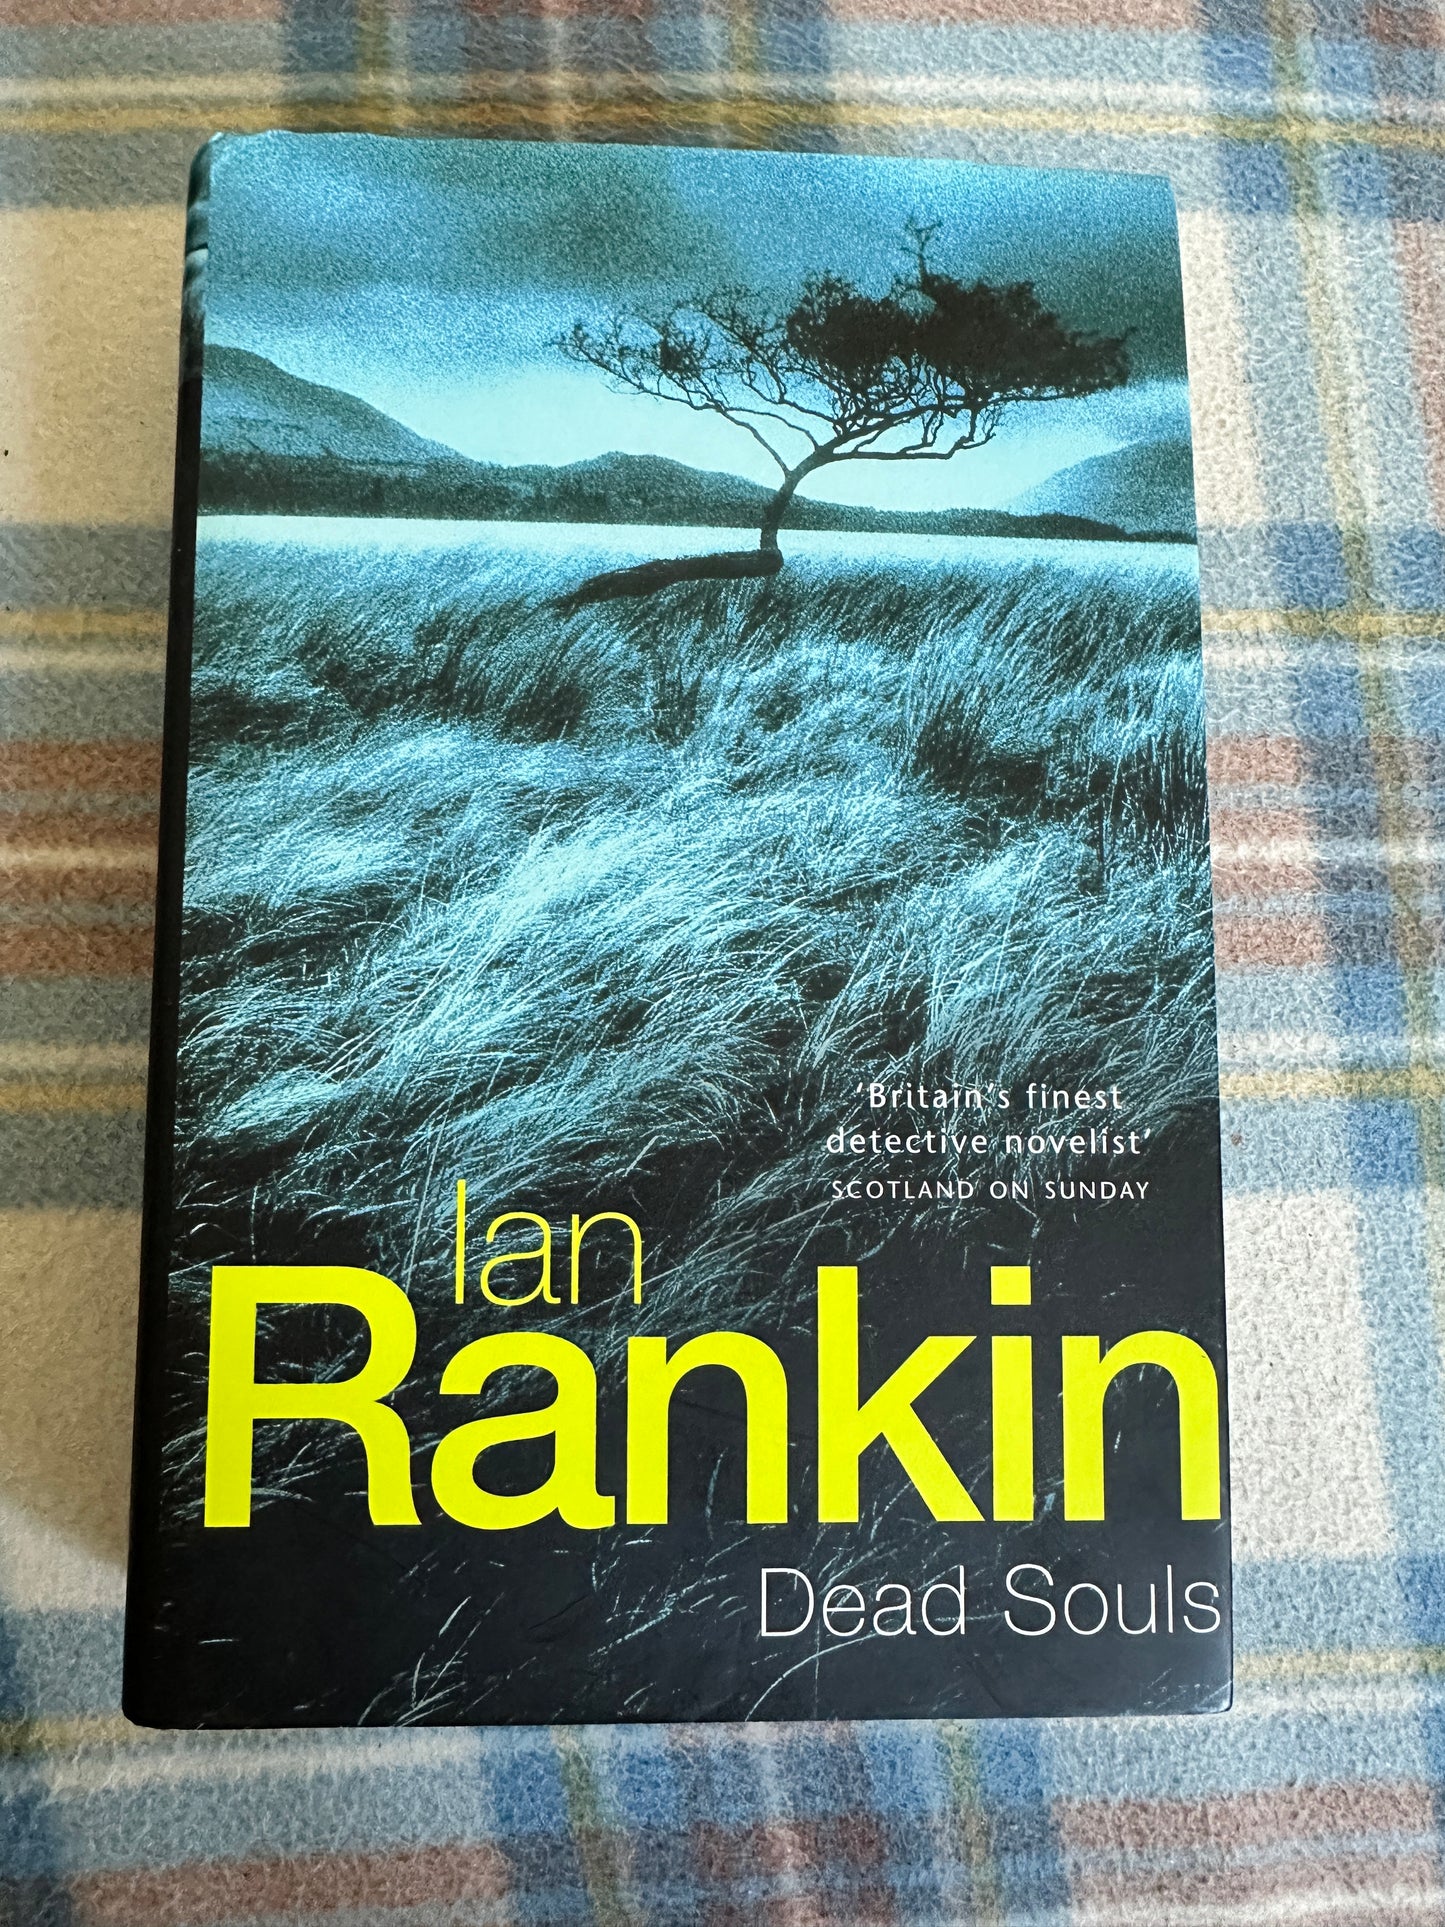 1999 Dead Souls - Ian Rankin(Orion Books)